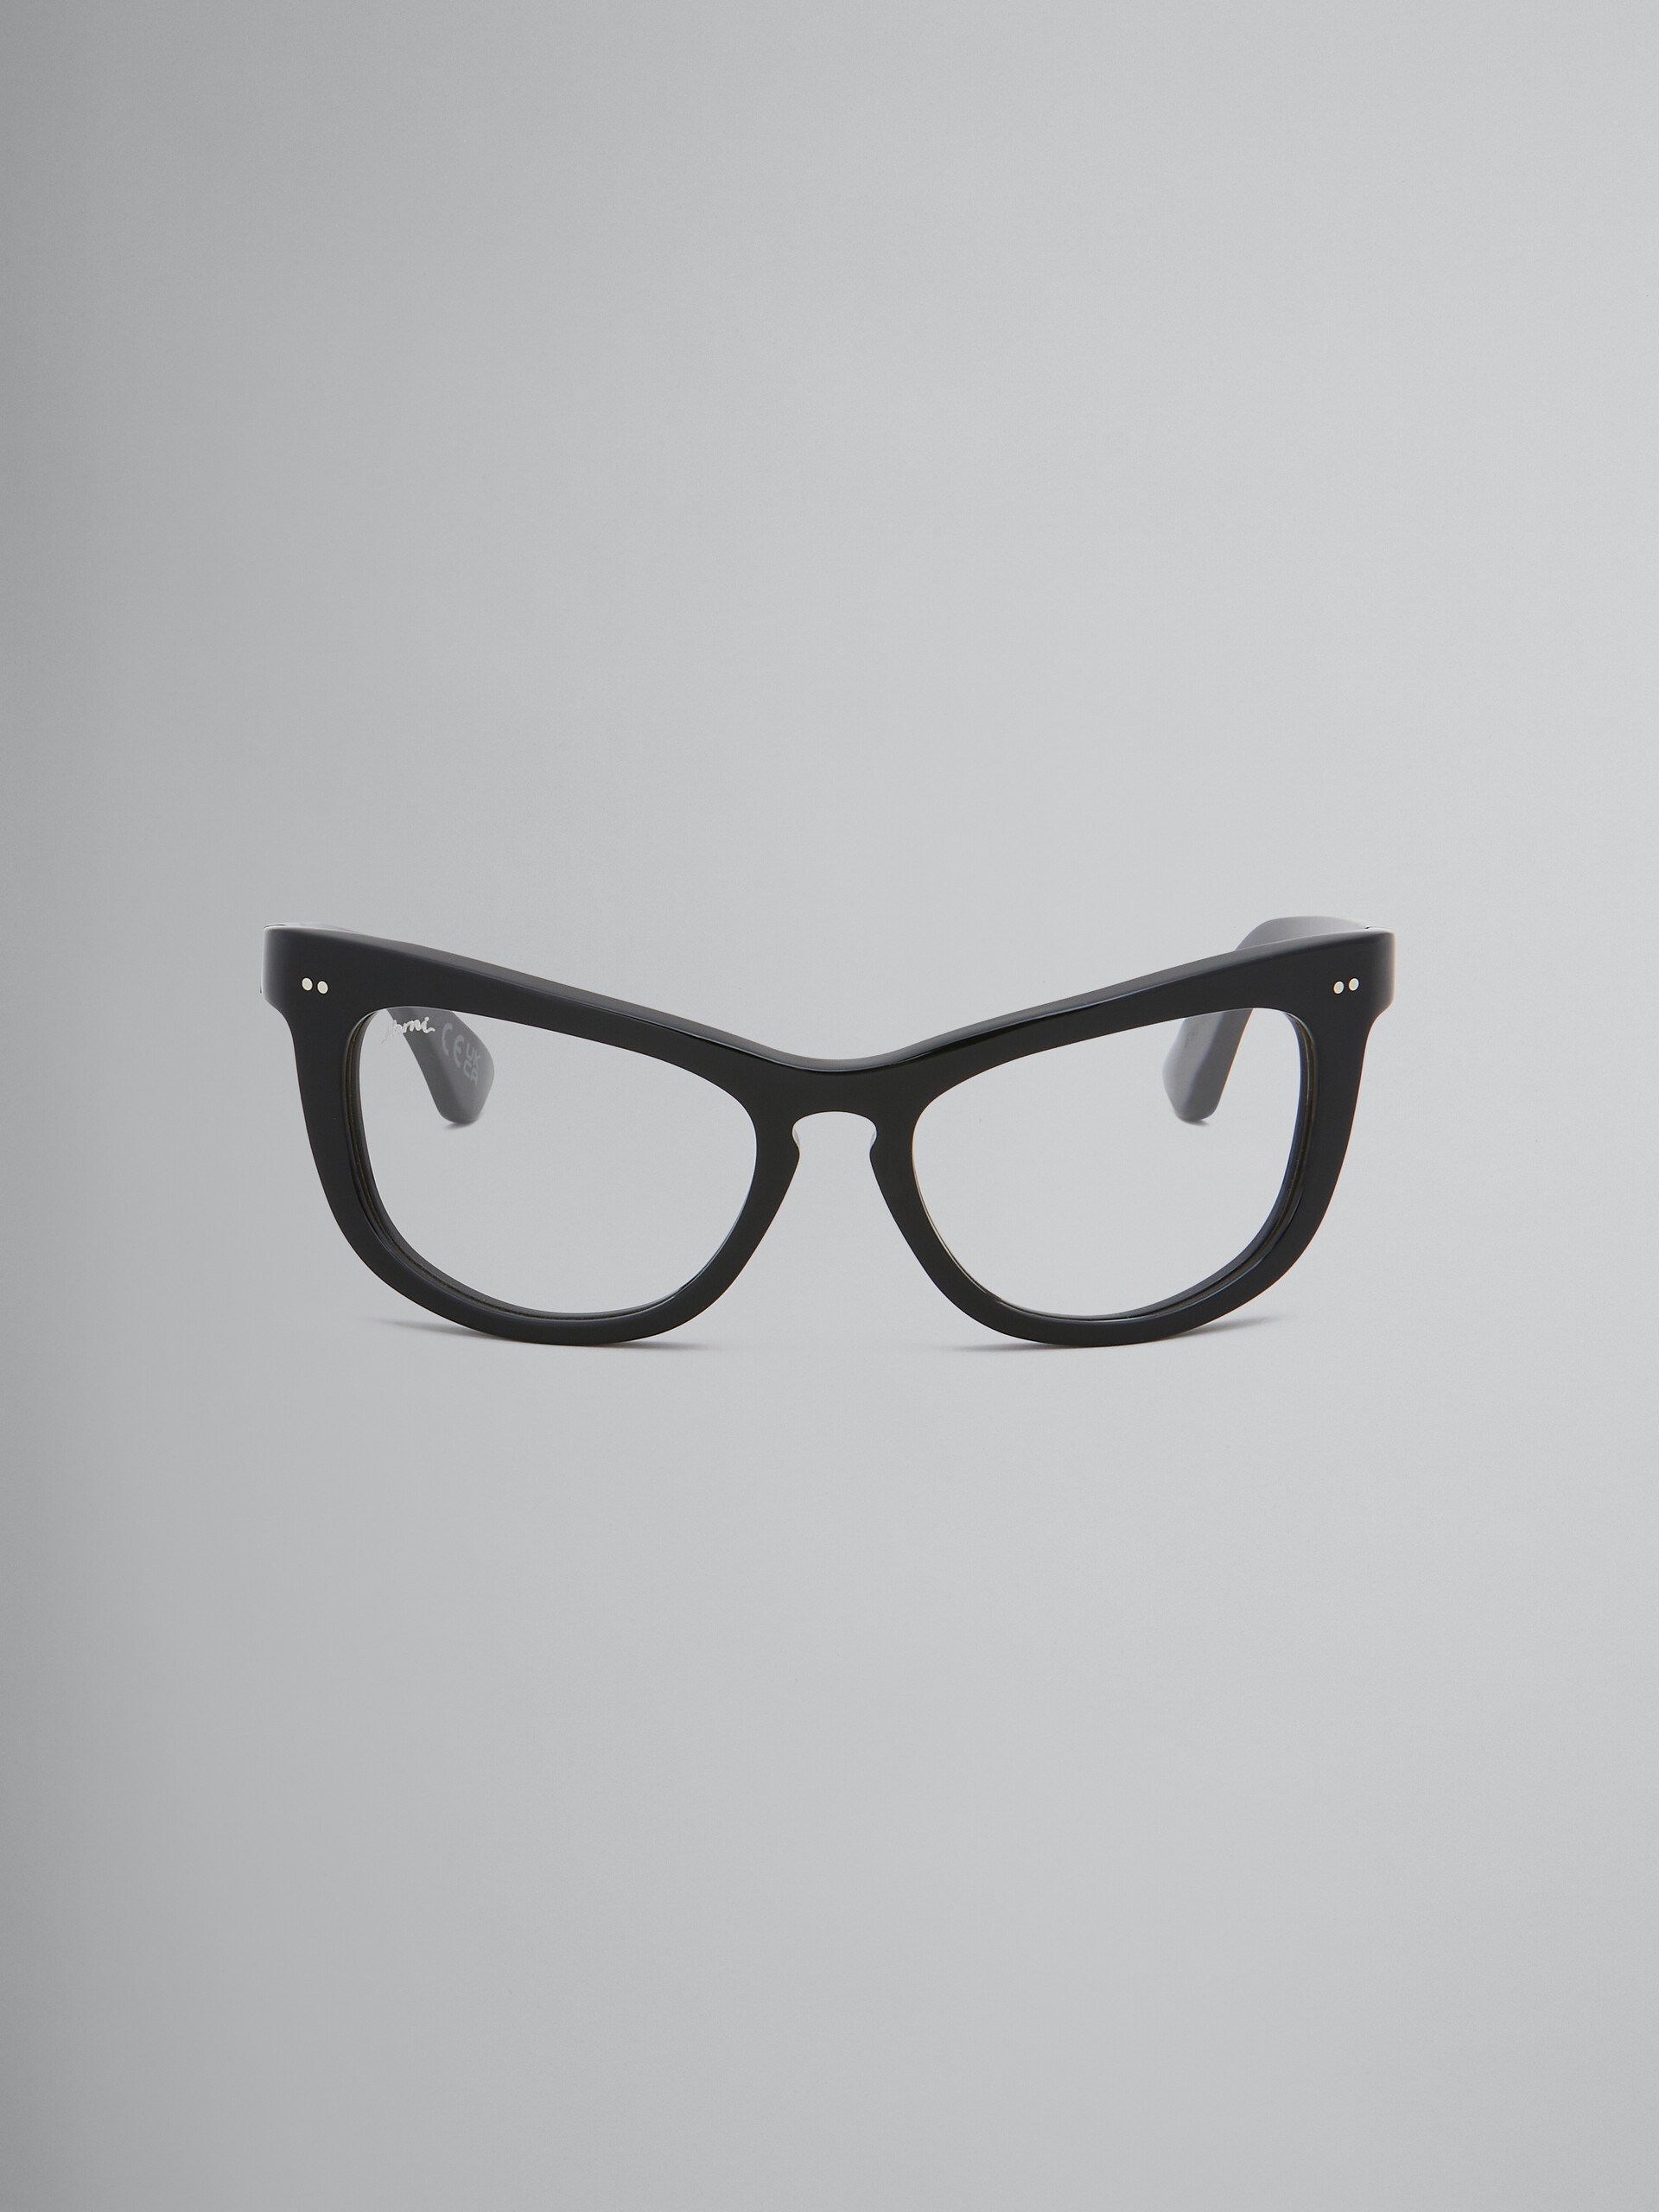 Schwarze Sehbrille Isamu - Optisch - Image 1